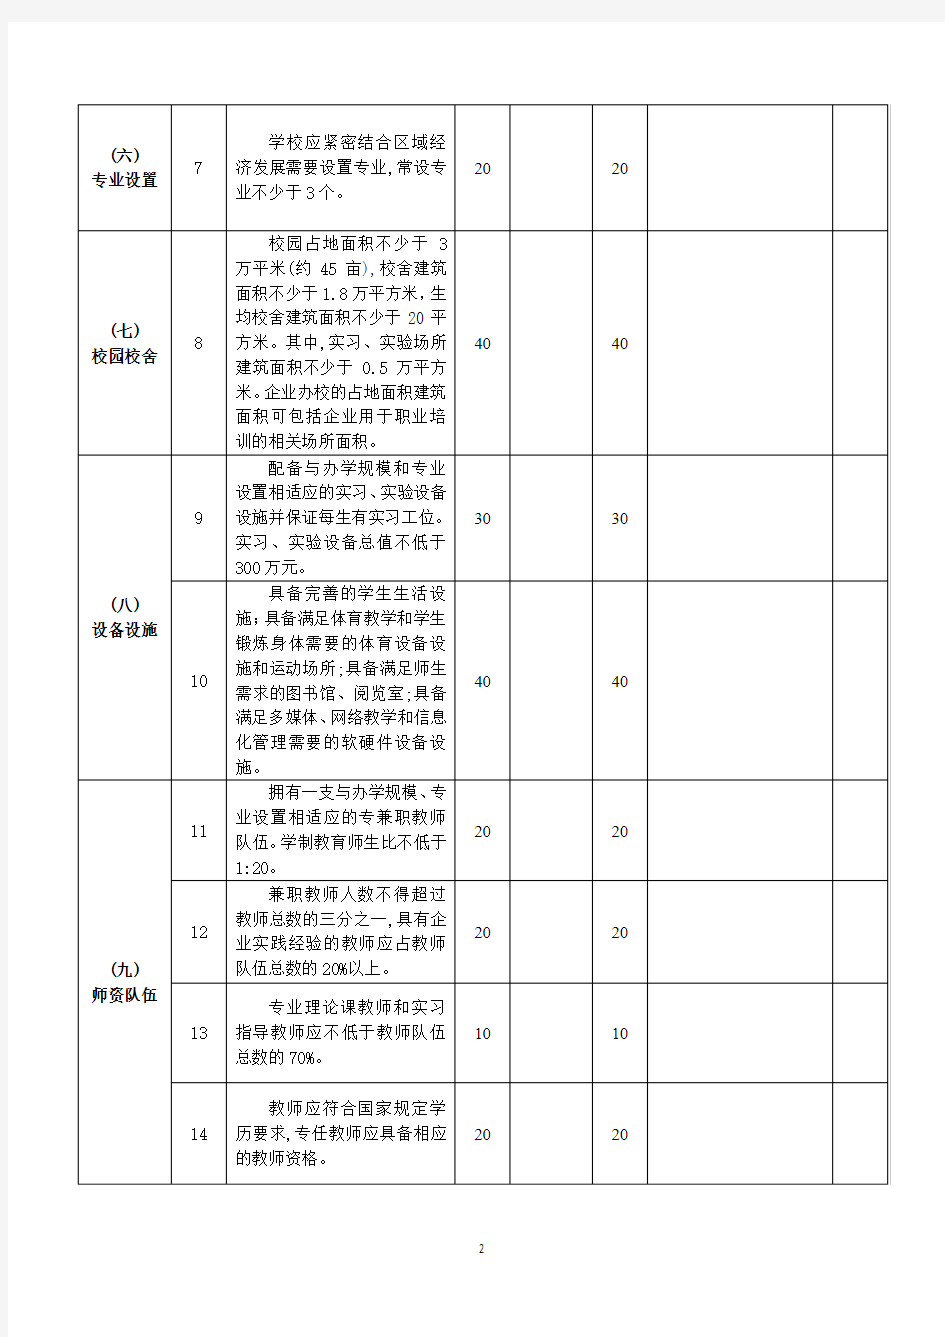 江苏省技工学校设置标准评分表(2018.12.20)